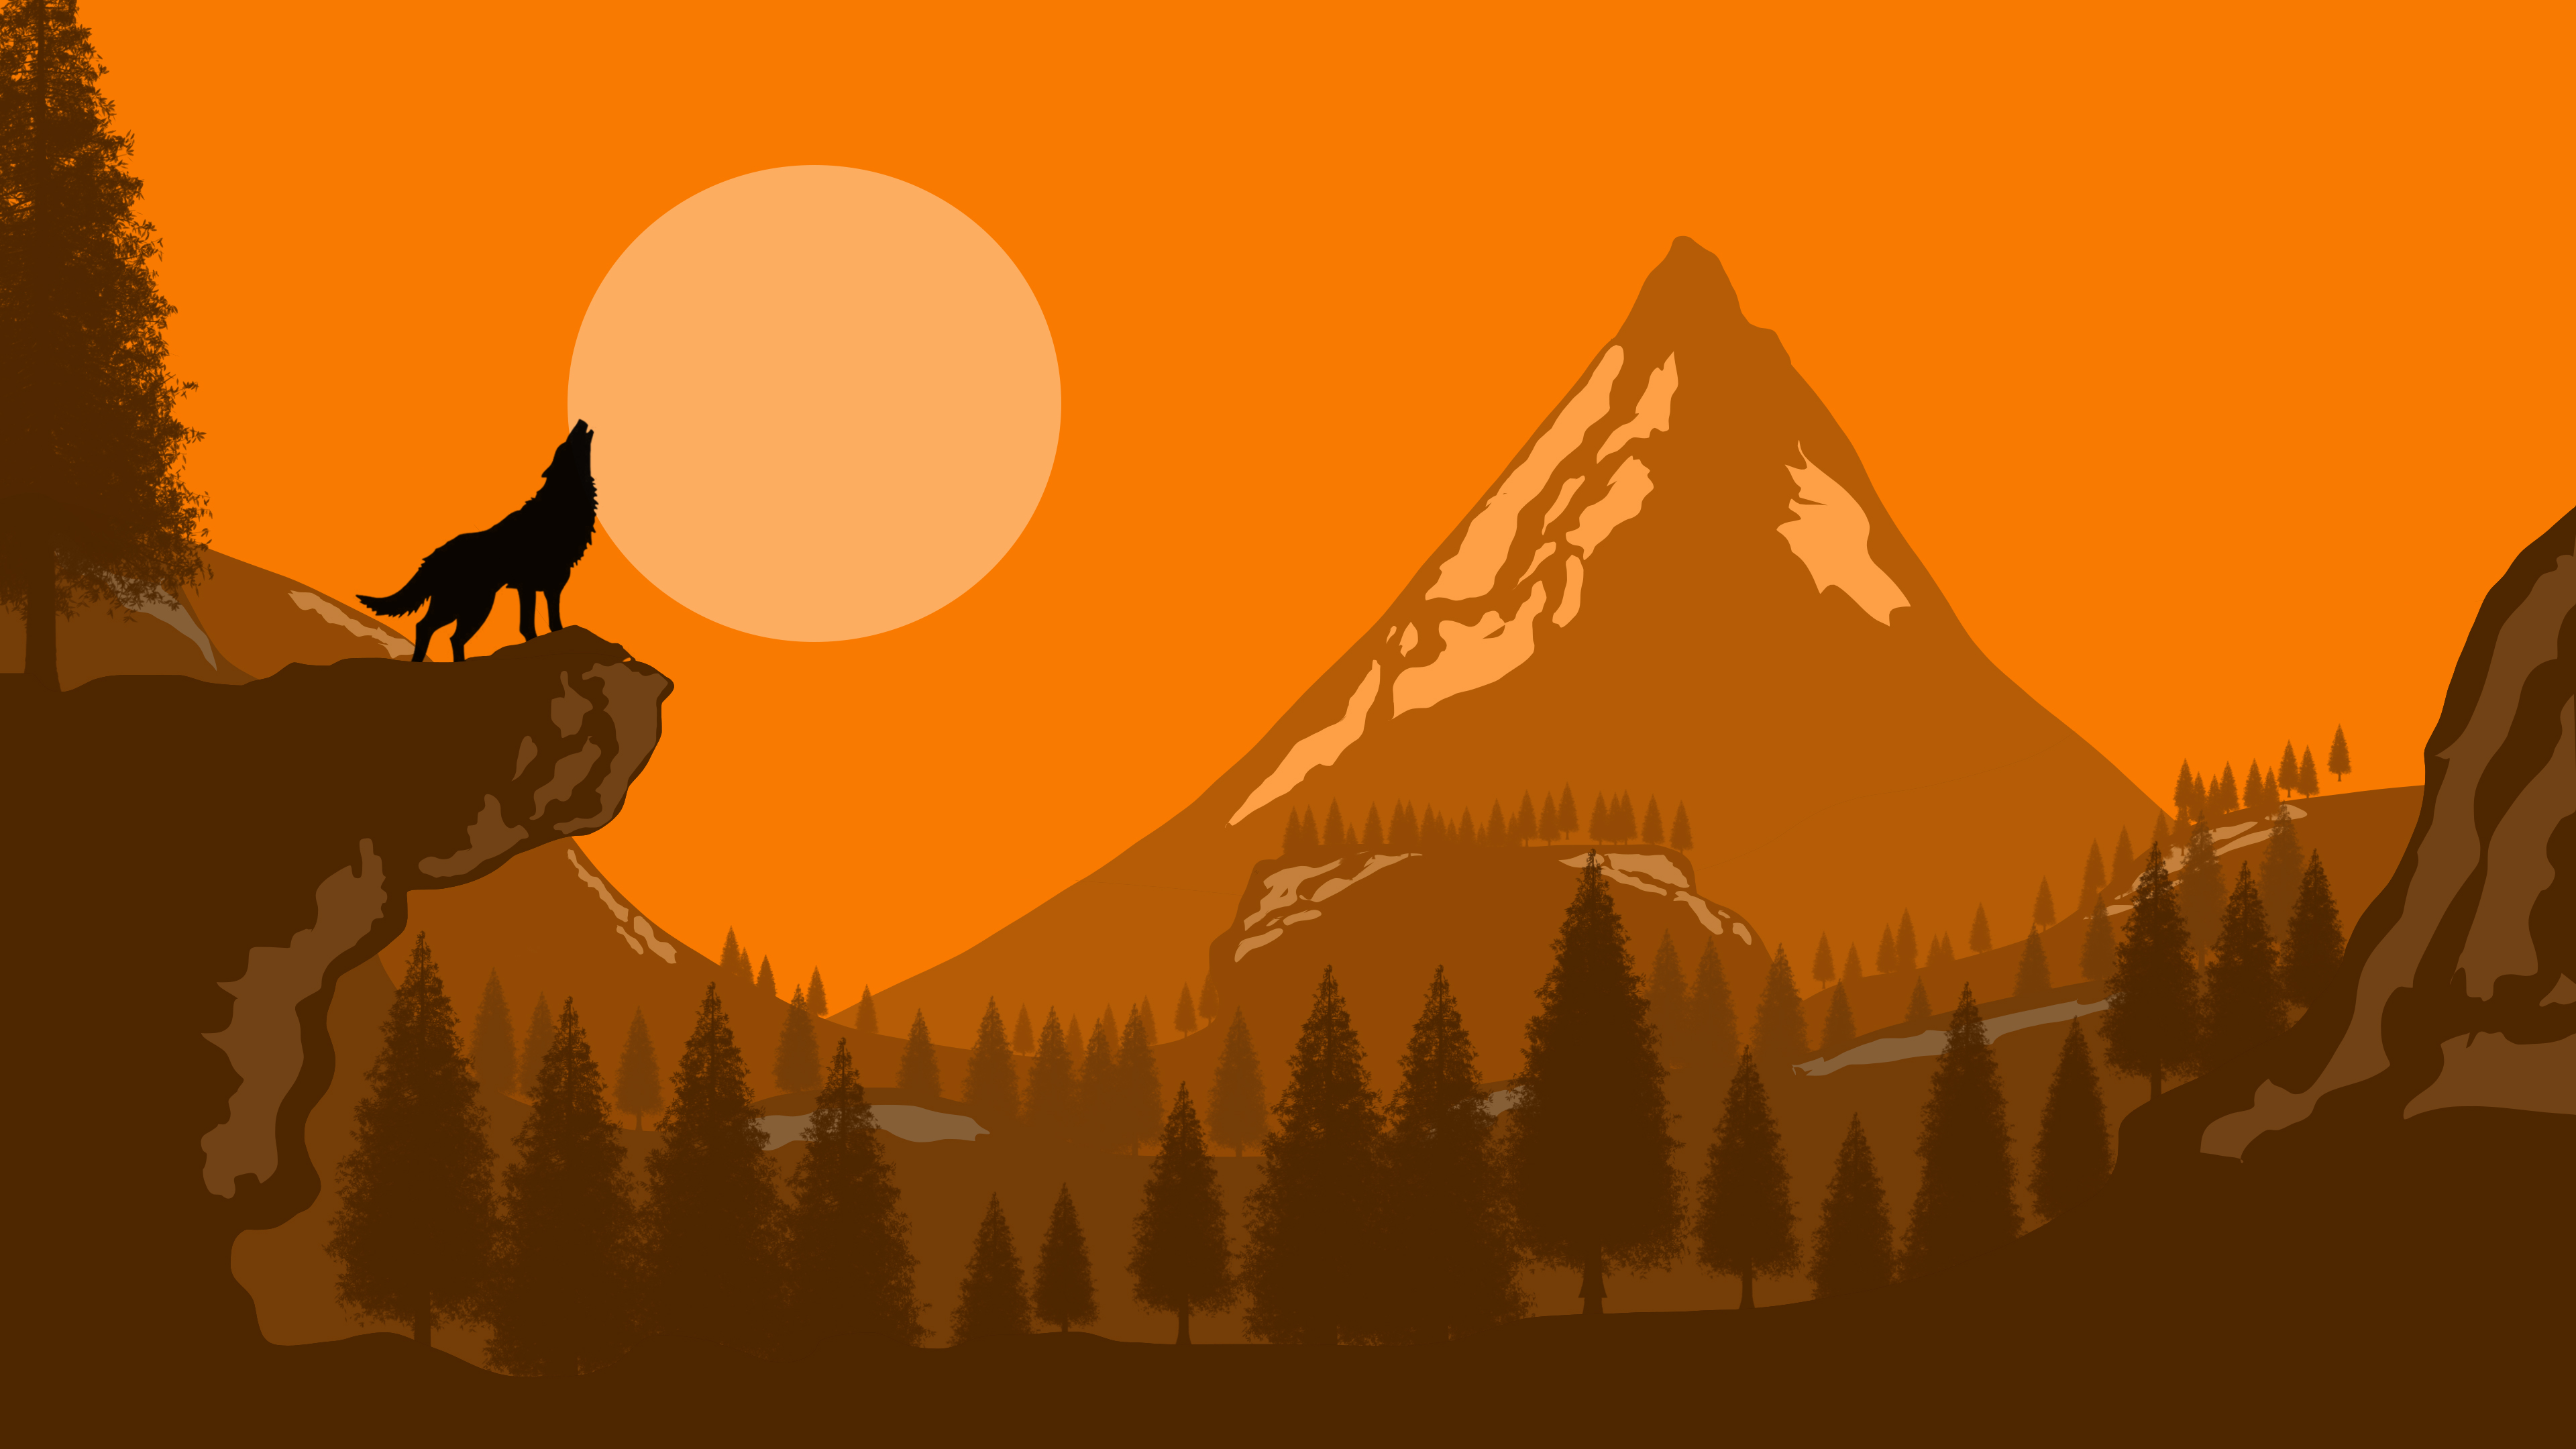 General 3840x2160 wolf minimalism orange brown howling animals mammals nature artwork landscape orange background